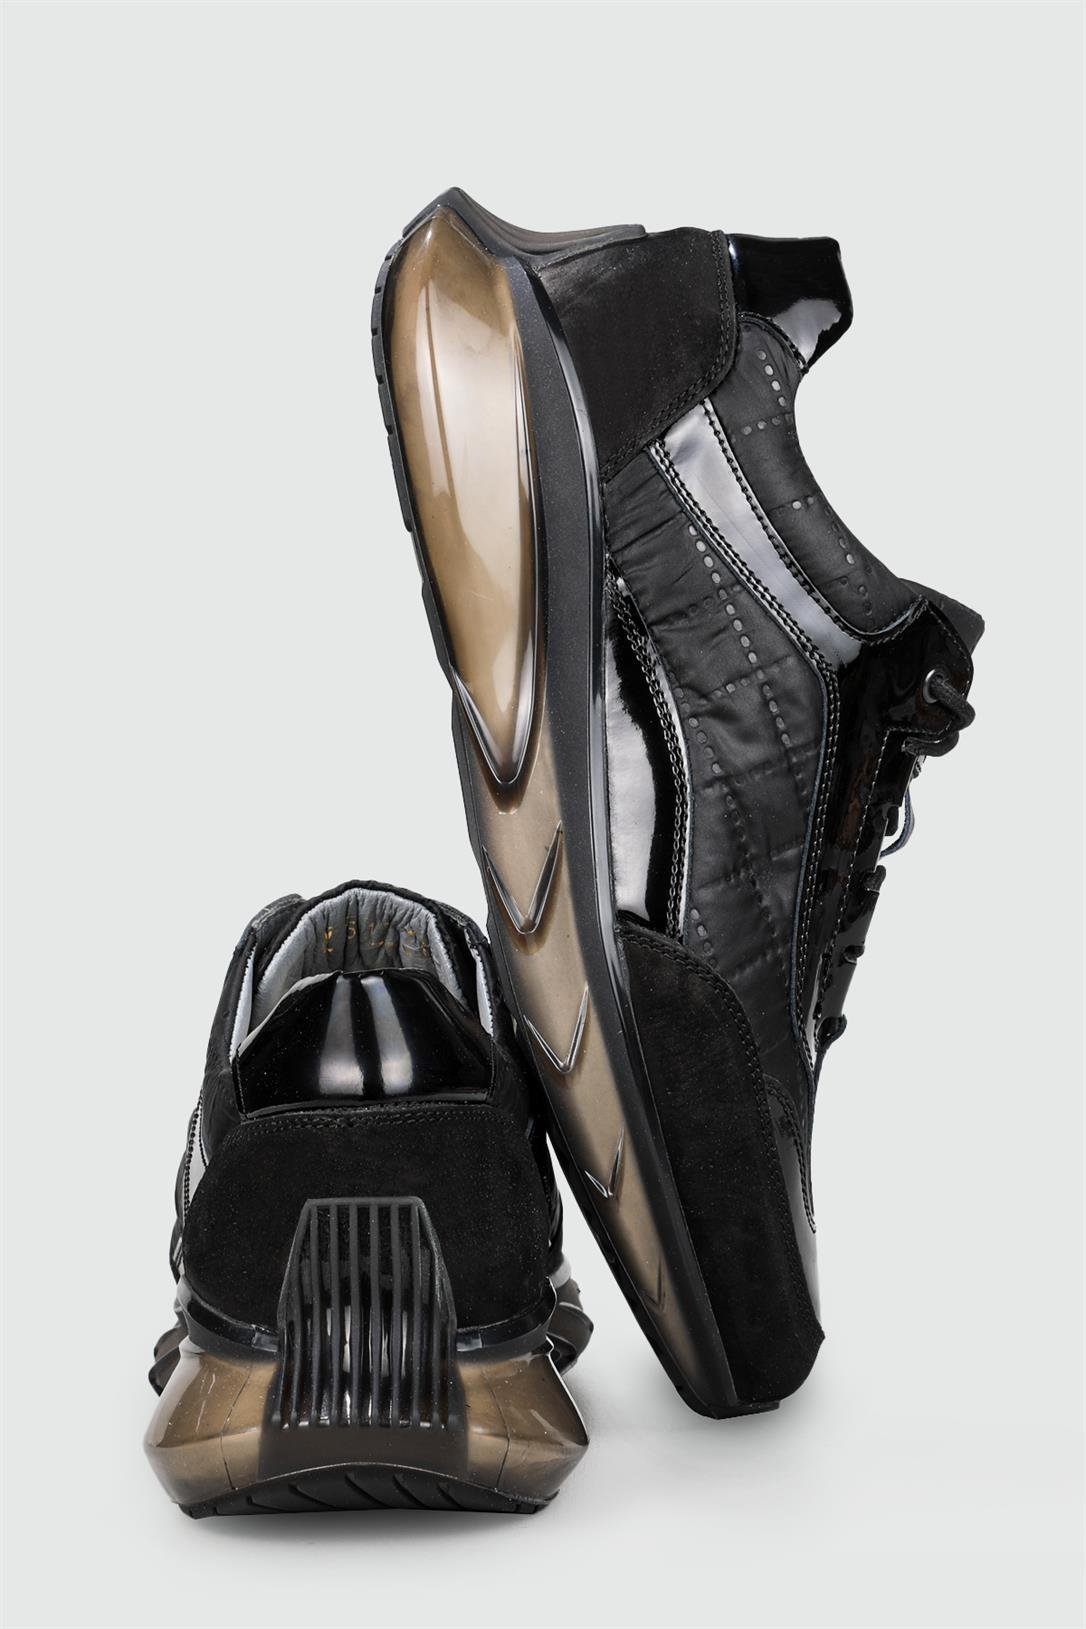 Voyager Hakiki Deri Rahat Comfort Siyah Rugan Erkek Ayakkabı 6017-1-Y |  Ayakkabı City